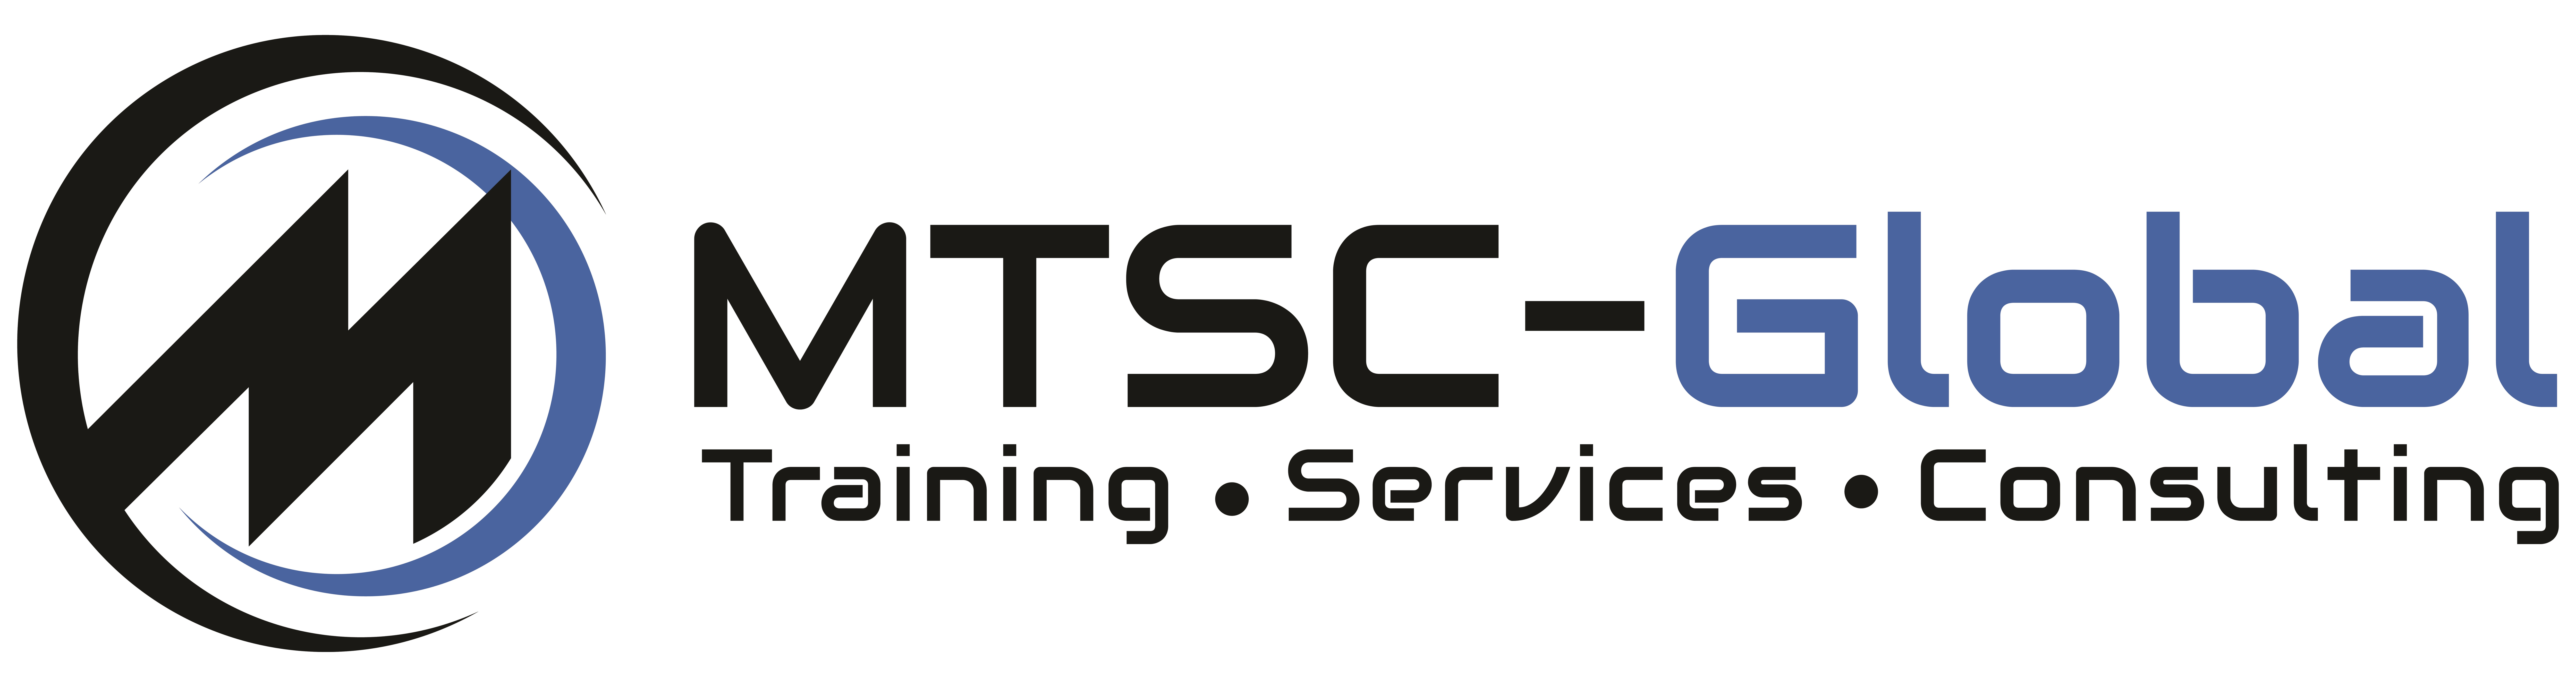 MTSC-GOBAL-SHOP-Logo